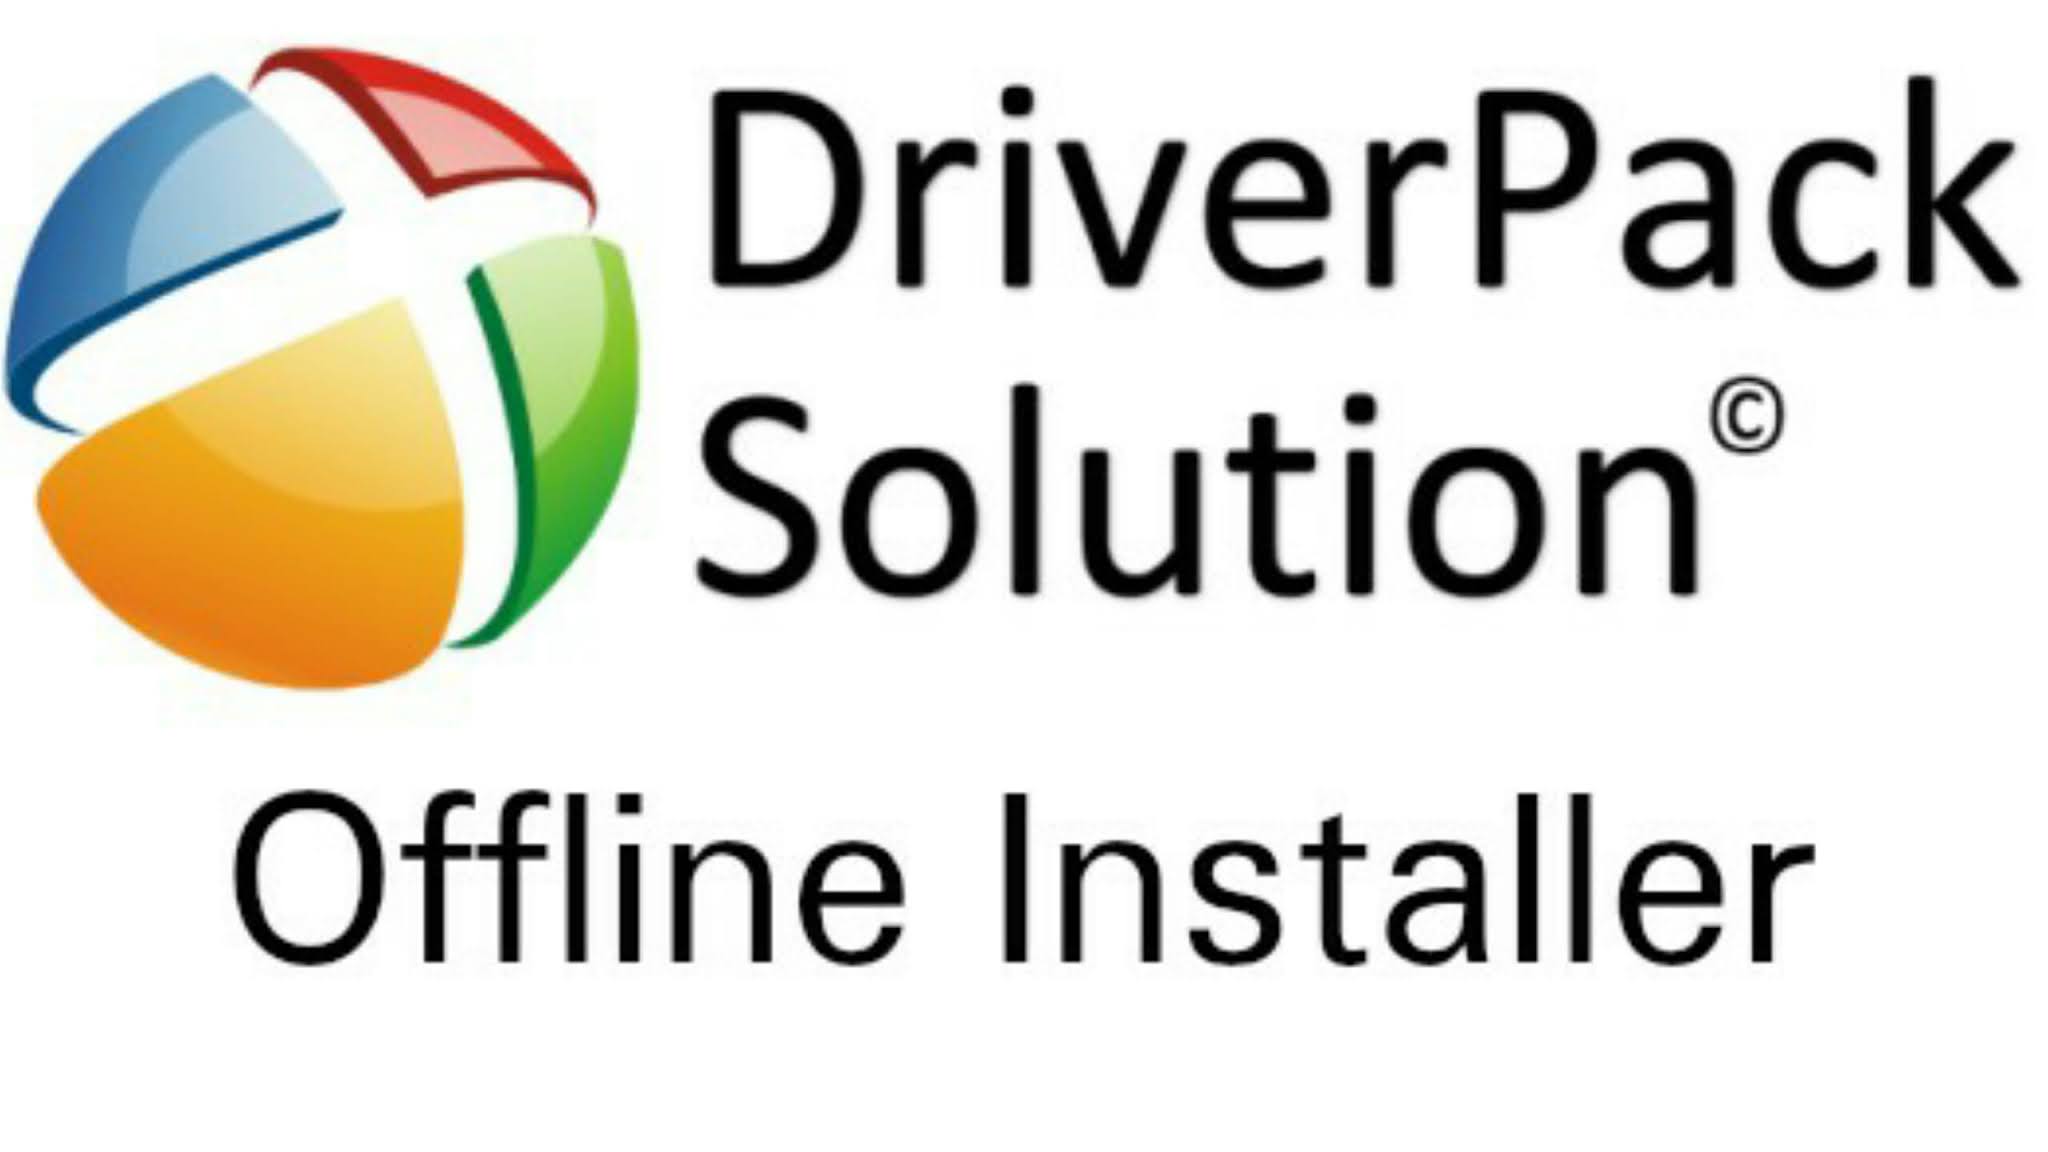 Драйвера offline. DRIVERPACK. Driver Pack solution. Драйвер пак PNG. Логотип драйвера.